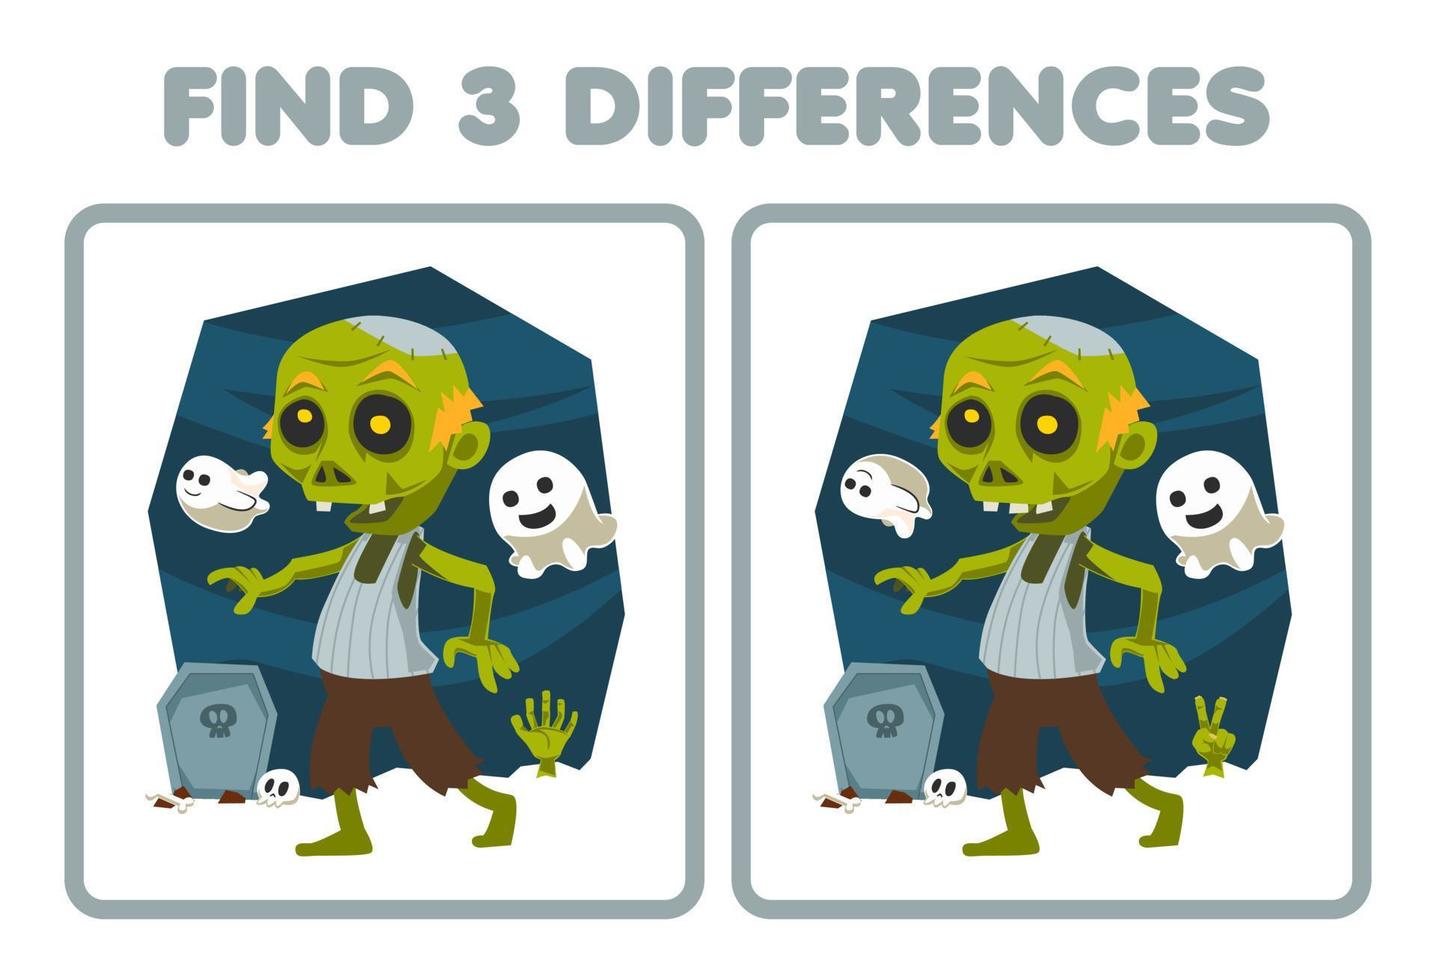 jeu éducatif pour les enfants trouver trois différences entre deux feuilles de travail imprimables de costume de zombie de dessin animé mignon halloween vecteur